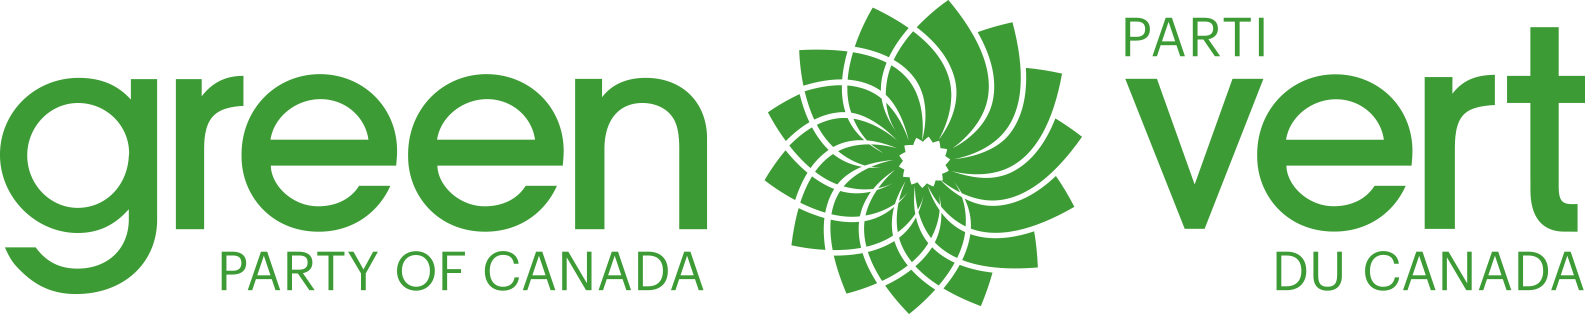 Green Party Logo - Logos & Graphics